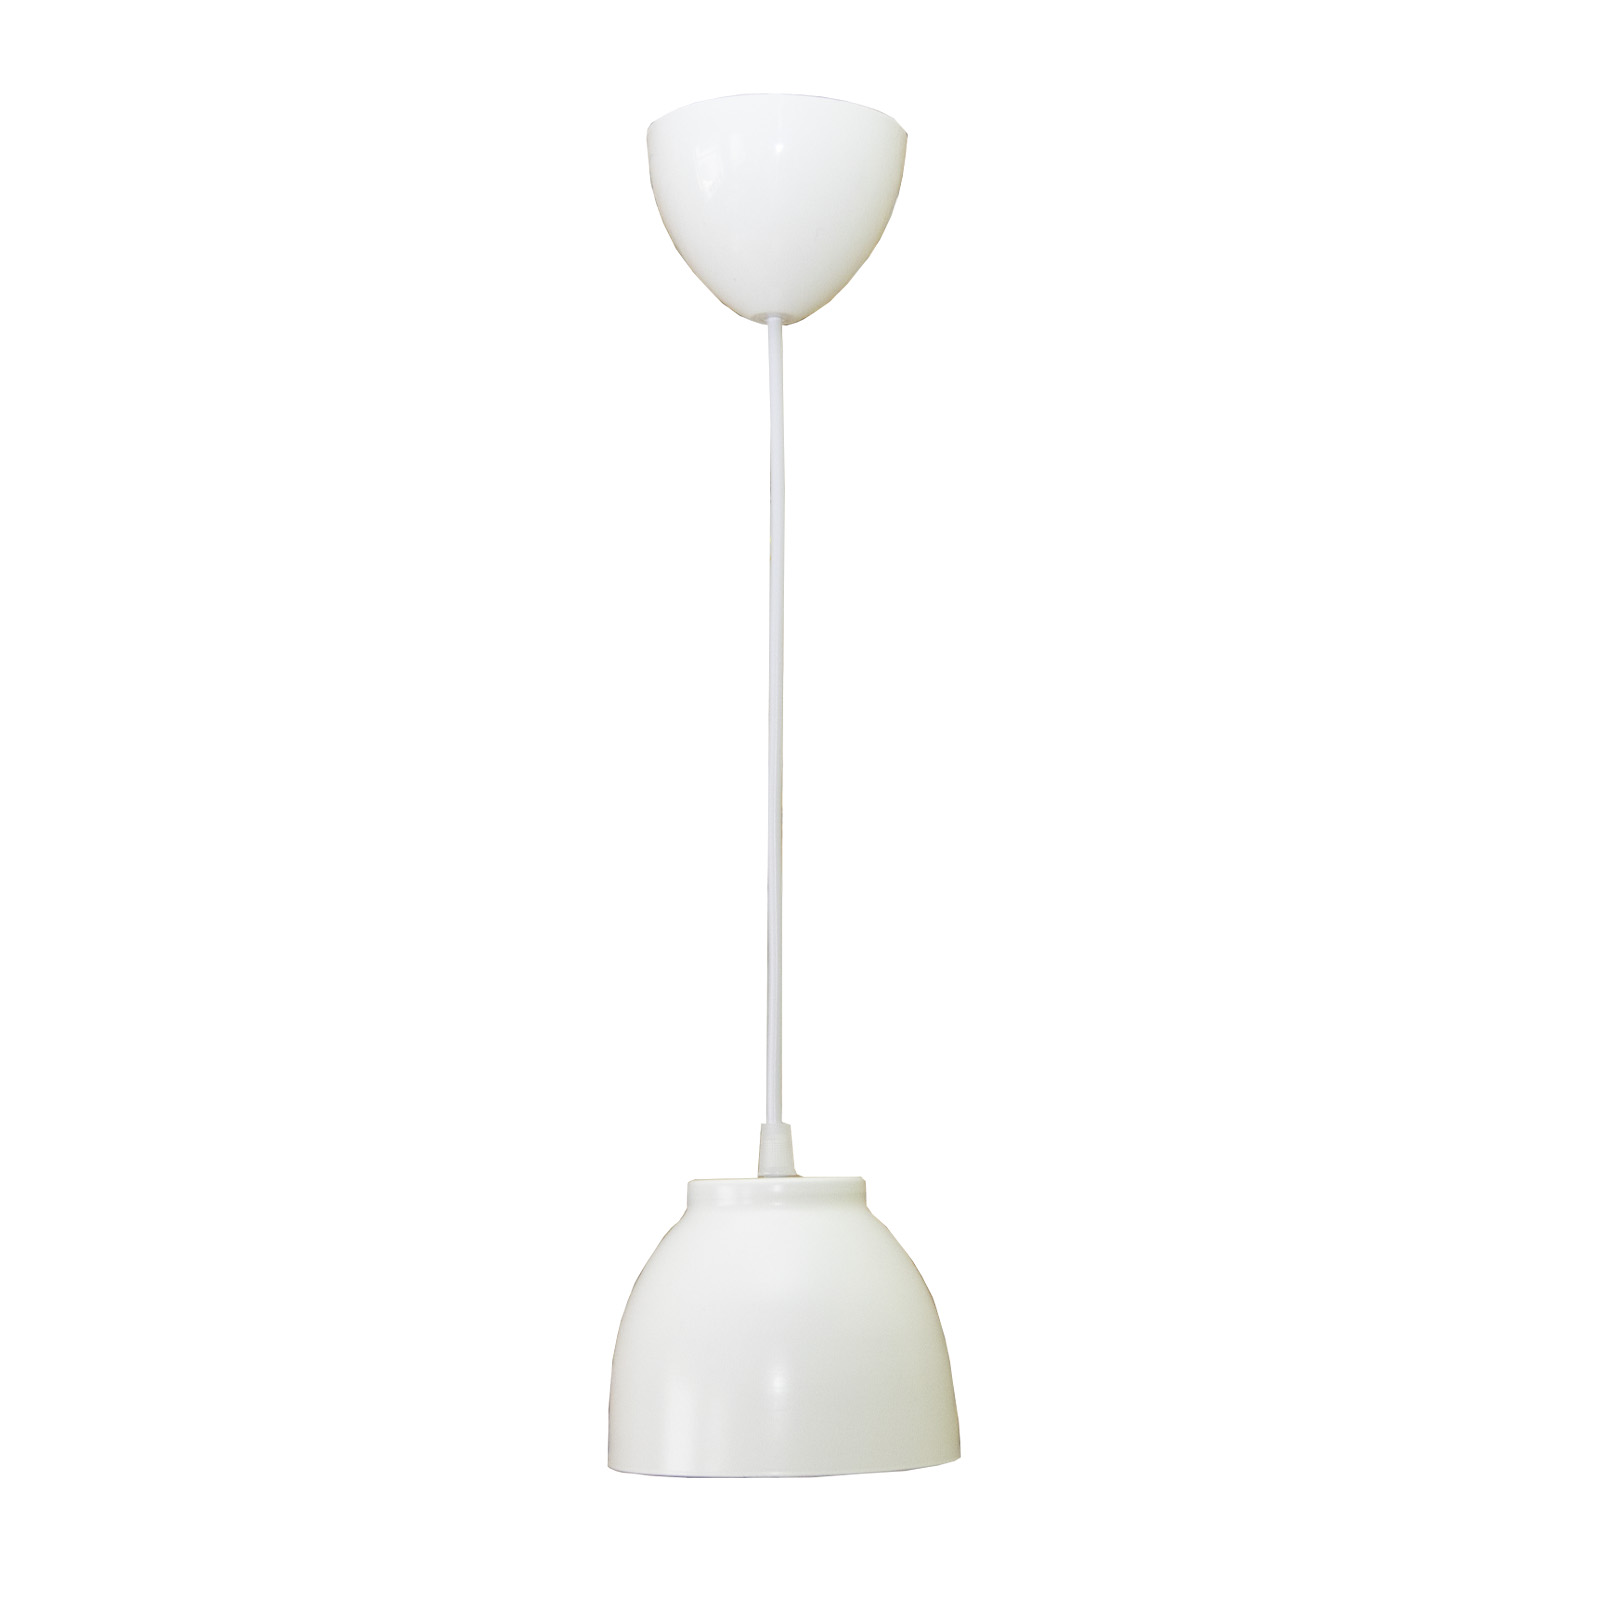 Подвесной светильник Maesta, Арт. MA-1113/1-W, E27, 40 Вт., цвет белый